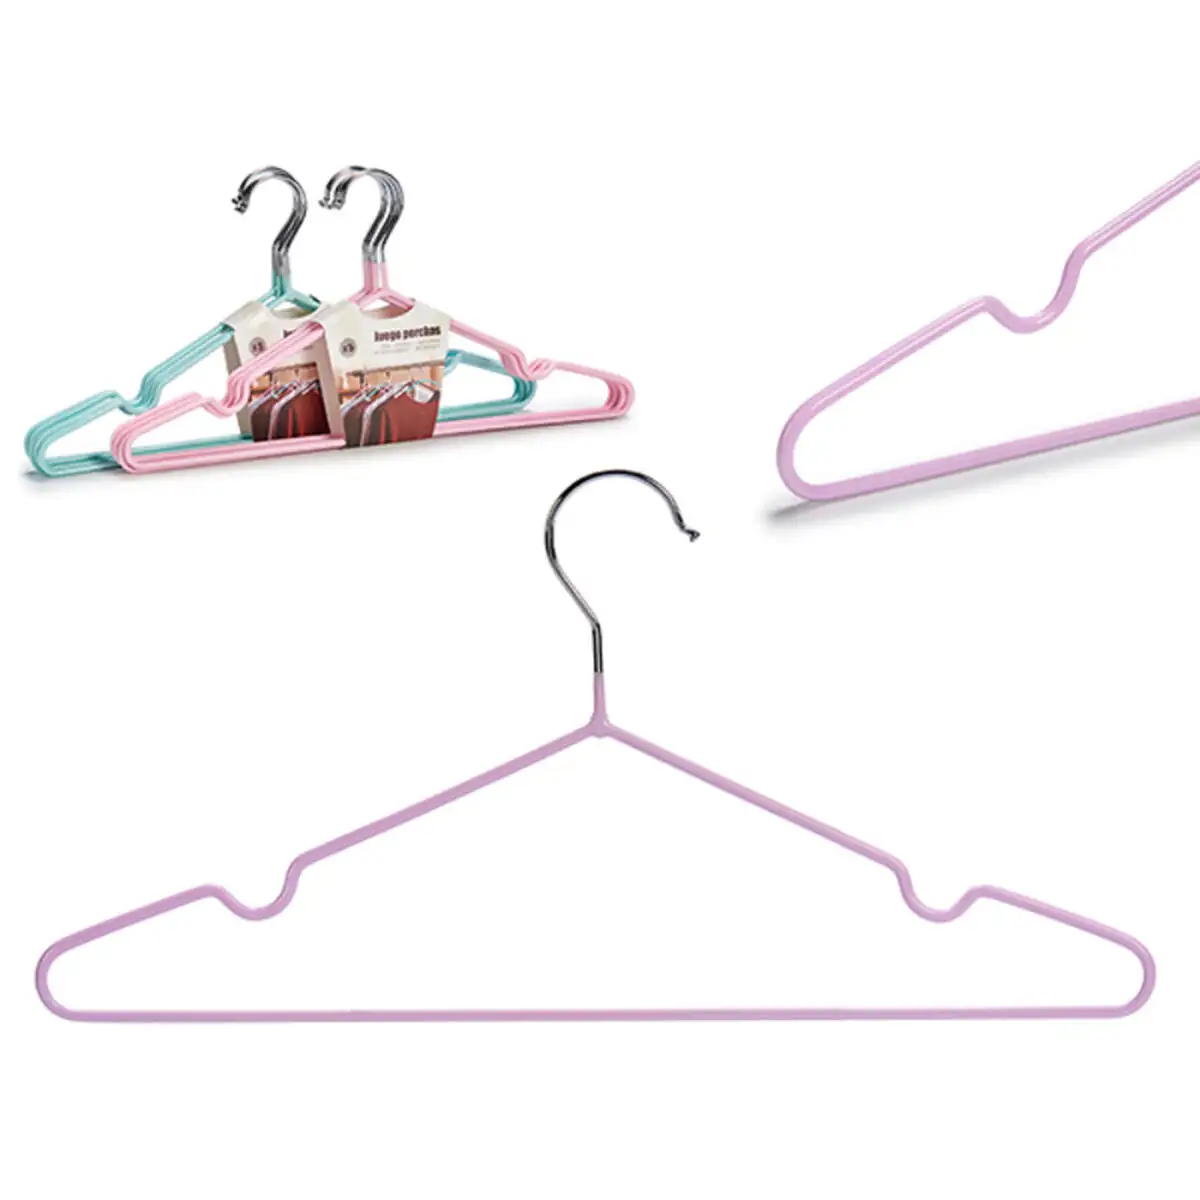 Jeu de porte manteaux bleu rose lila acier plastique_2367. DIAYTAR SENEGAL - Votre Destination Shopping pour Tous. Parcourez notre boutique en ligne et découvrez une variété de produits pour satisfaire tous vos besoins et désirs.